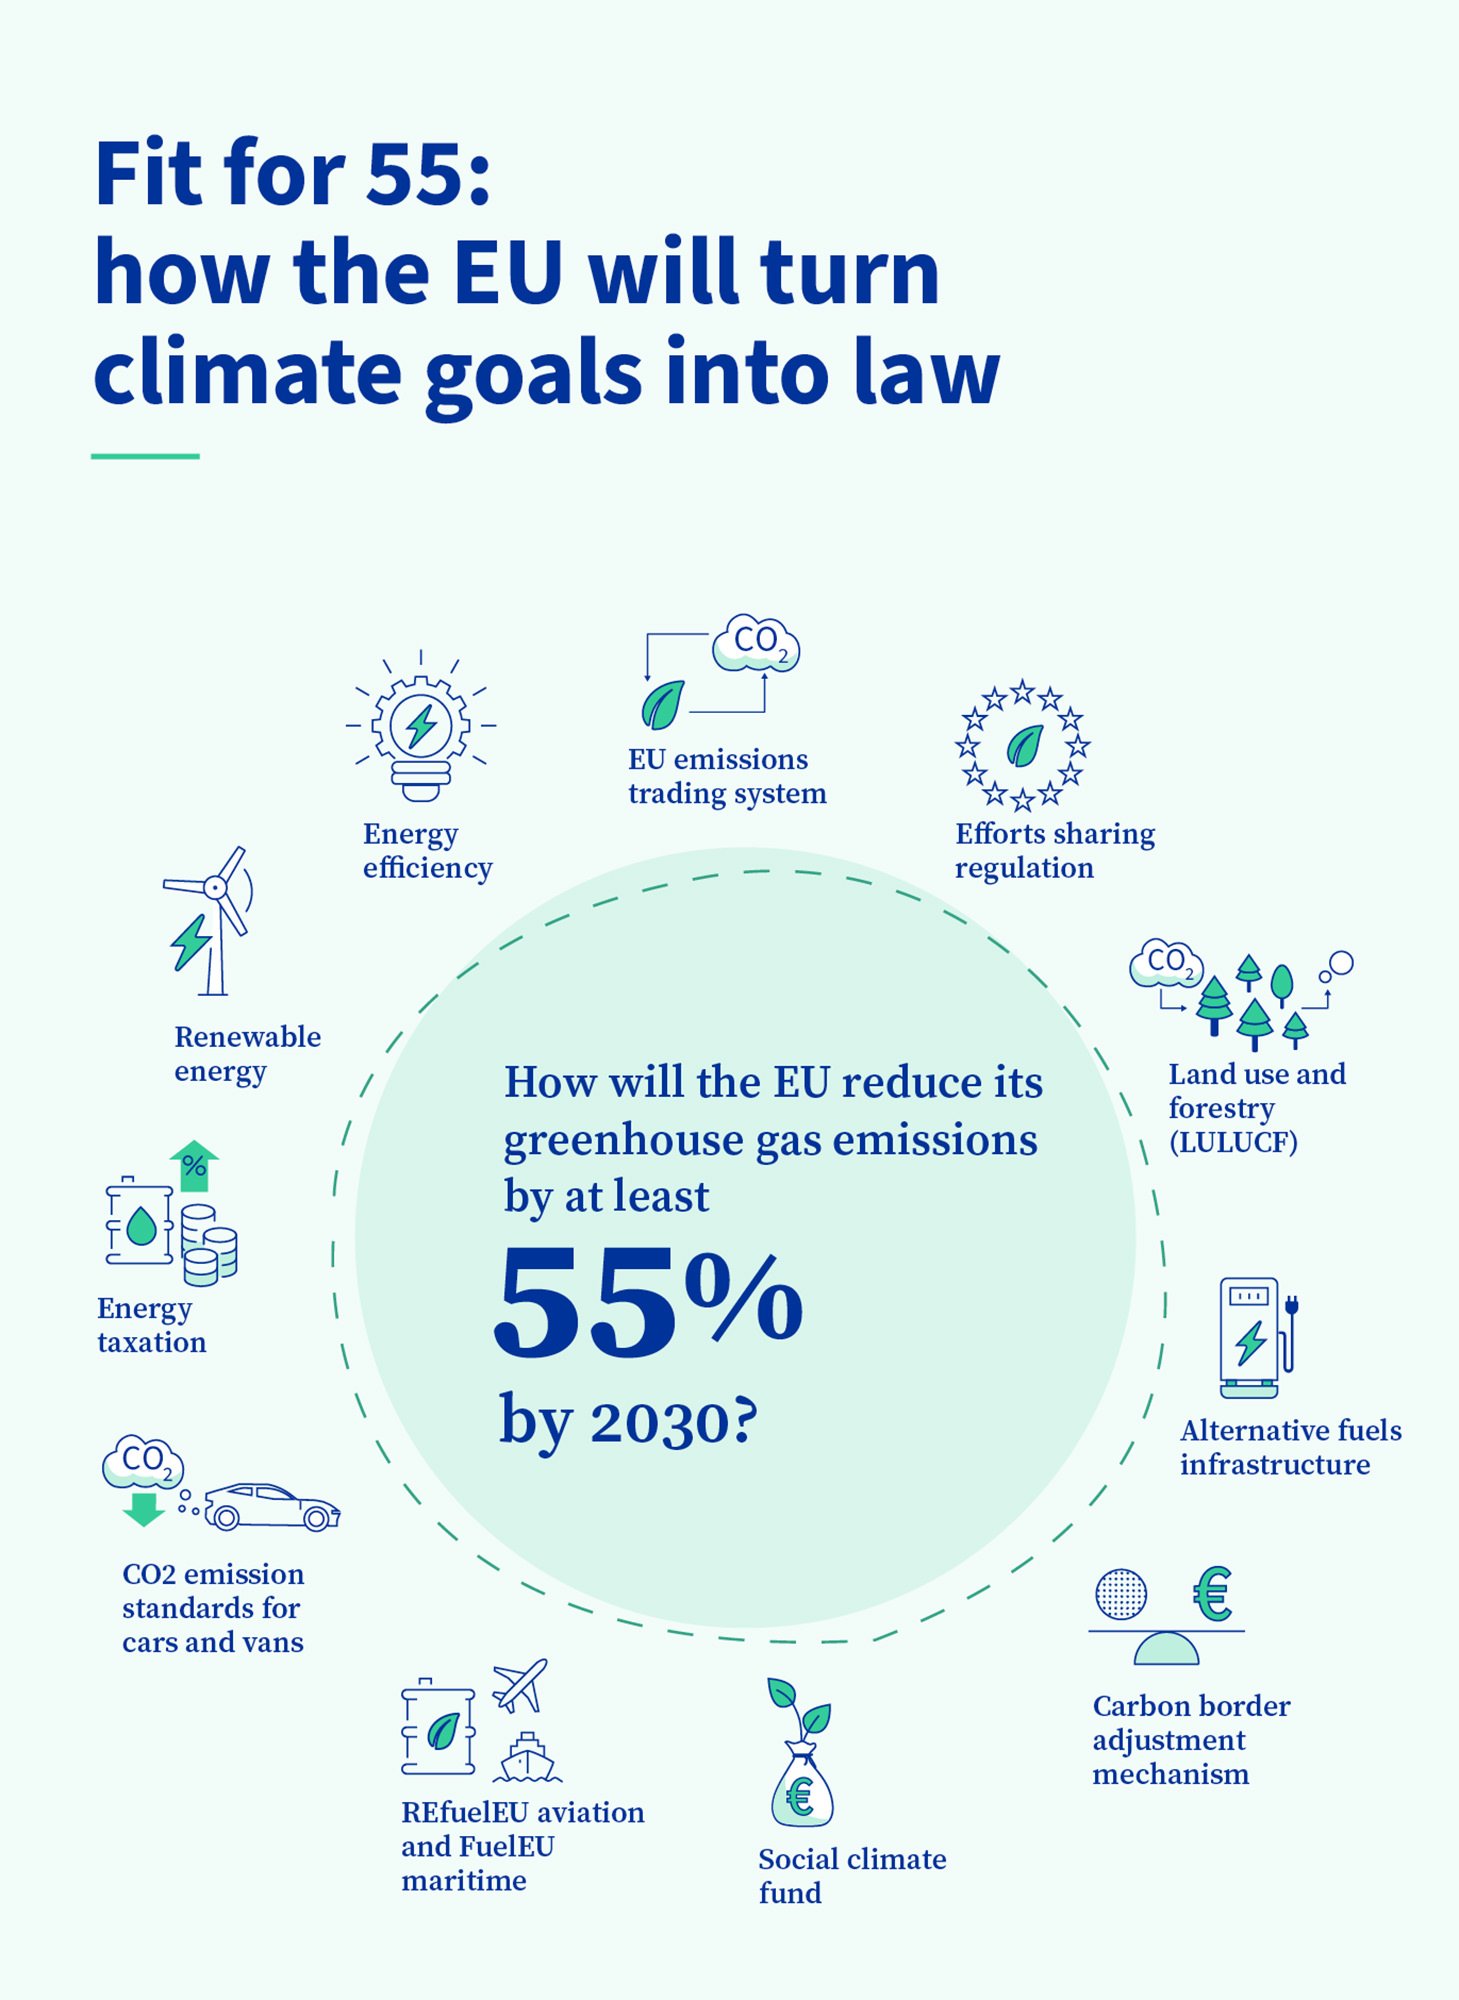 инфографика о законодательстве ЕС, сокращающем выбросы на 55% к 2030 году